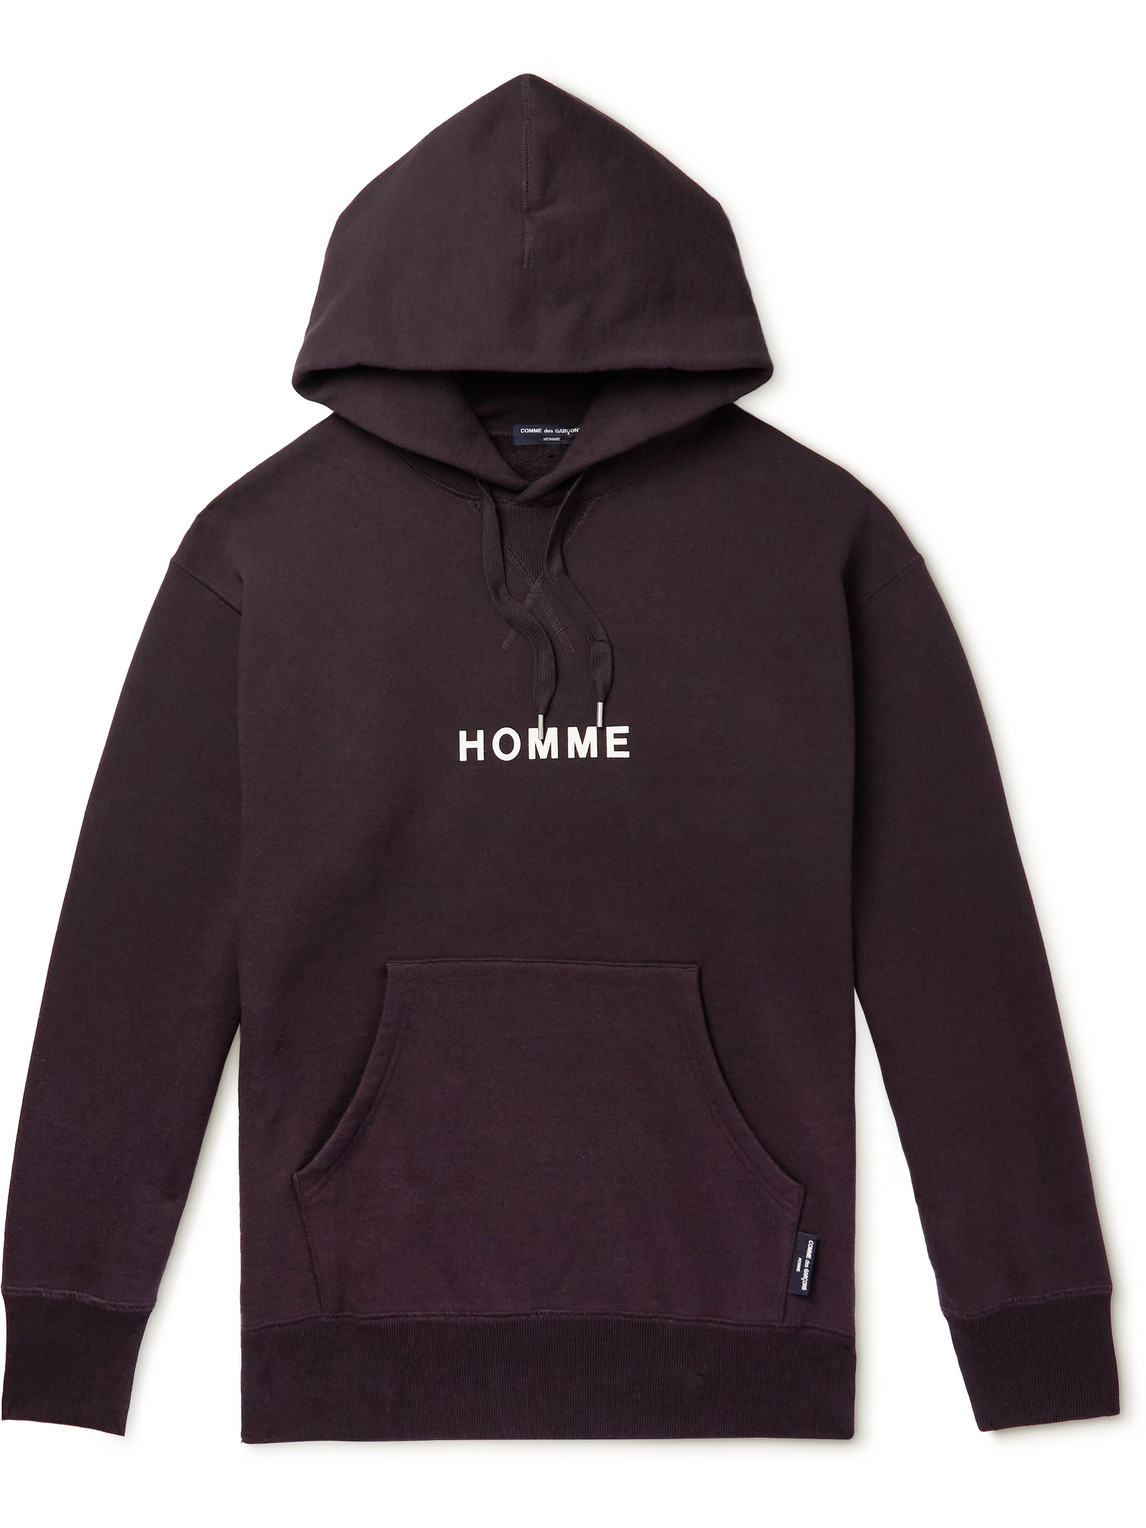 Comme des Garçons HOMME - Logo-Print Cotton-Jersey Hoodie - Men - Black - S